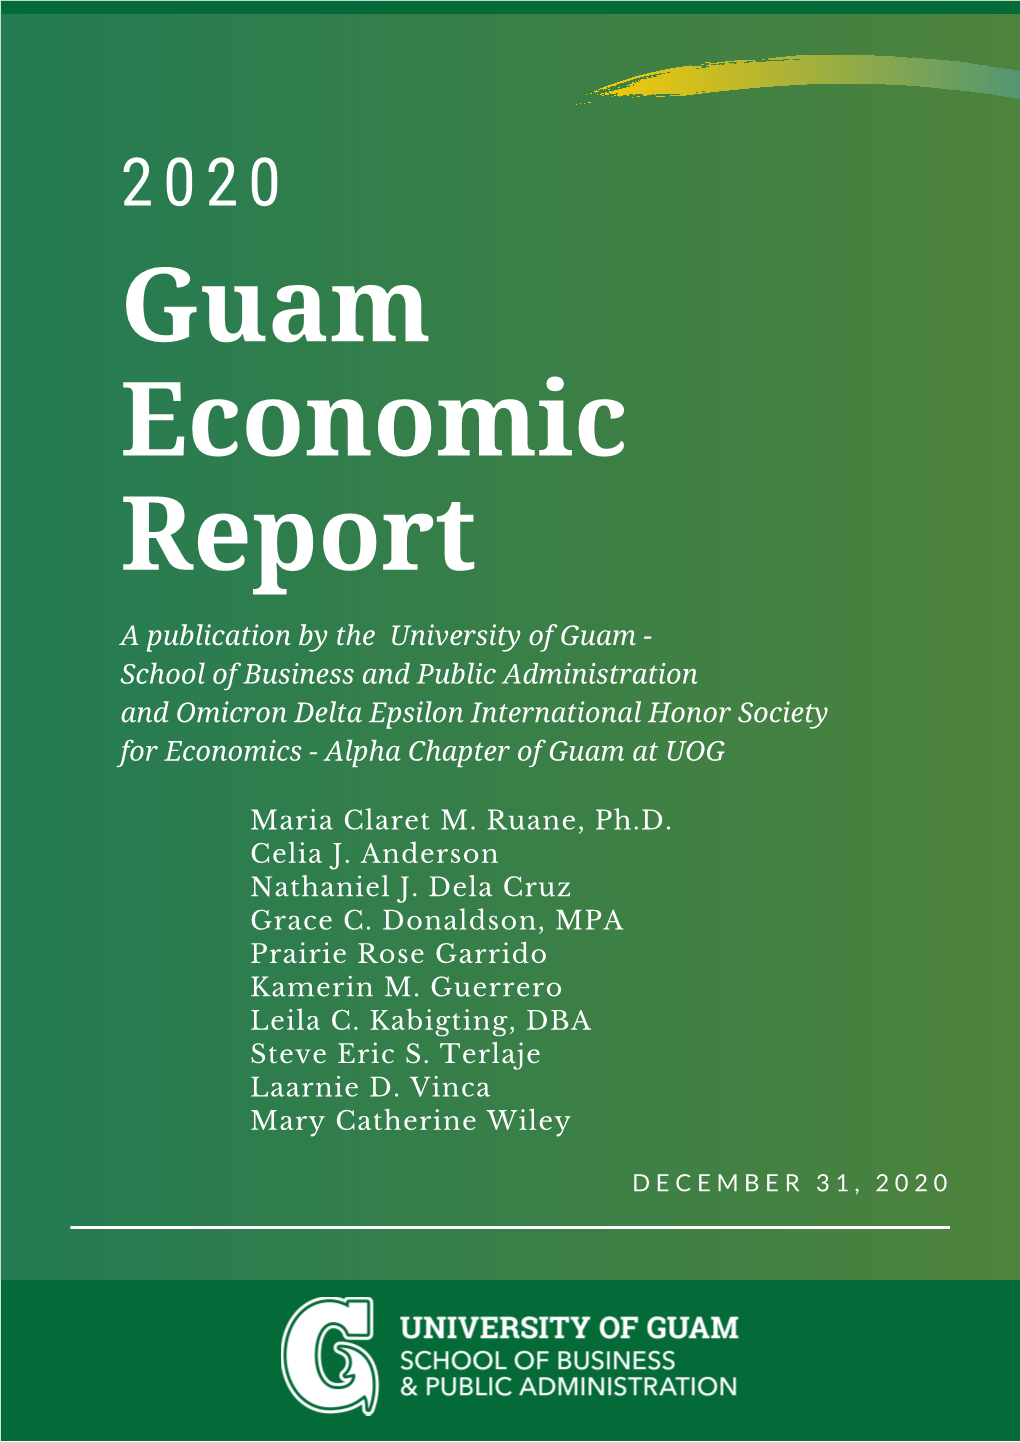 2020 Guam Economic Report